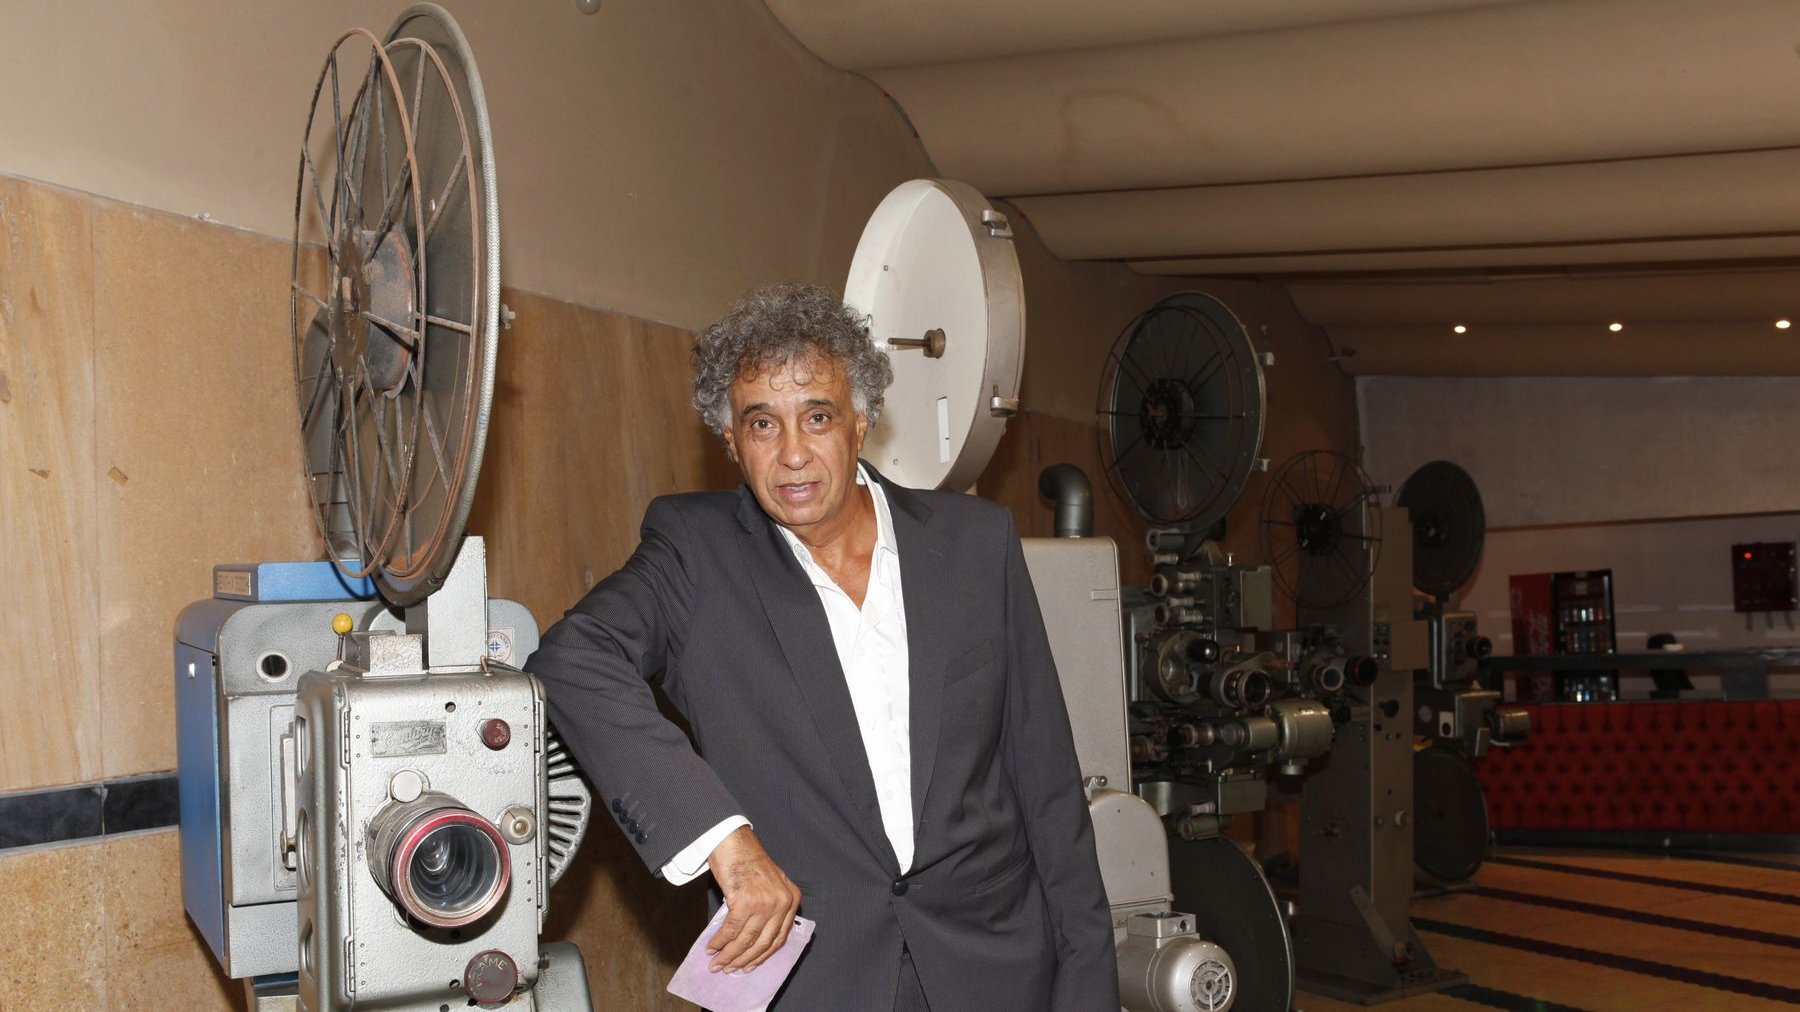 Le réalisateur Hassan Benjelloun présentait Jeudi soir son film "La lune rouge" au cinéma Rif.
